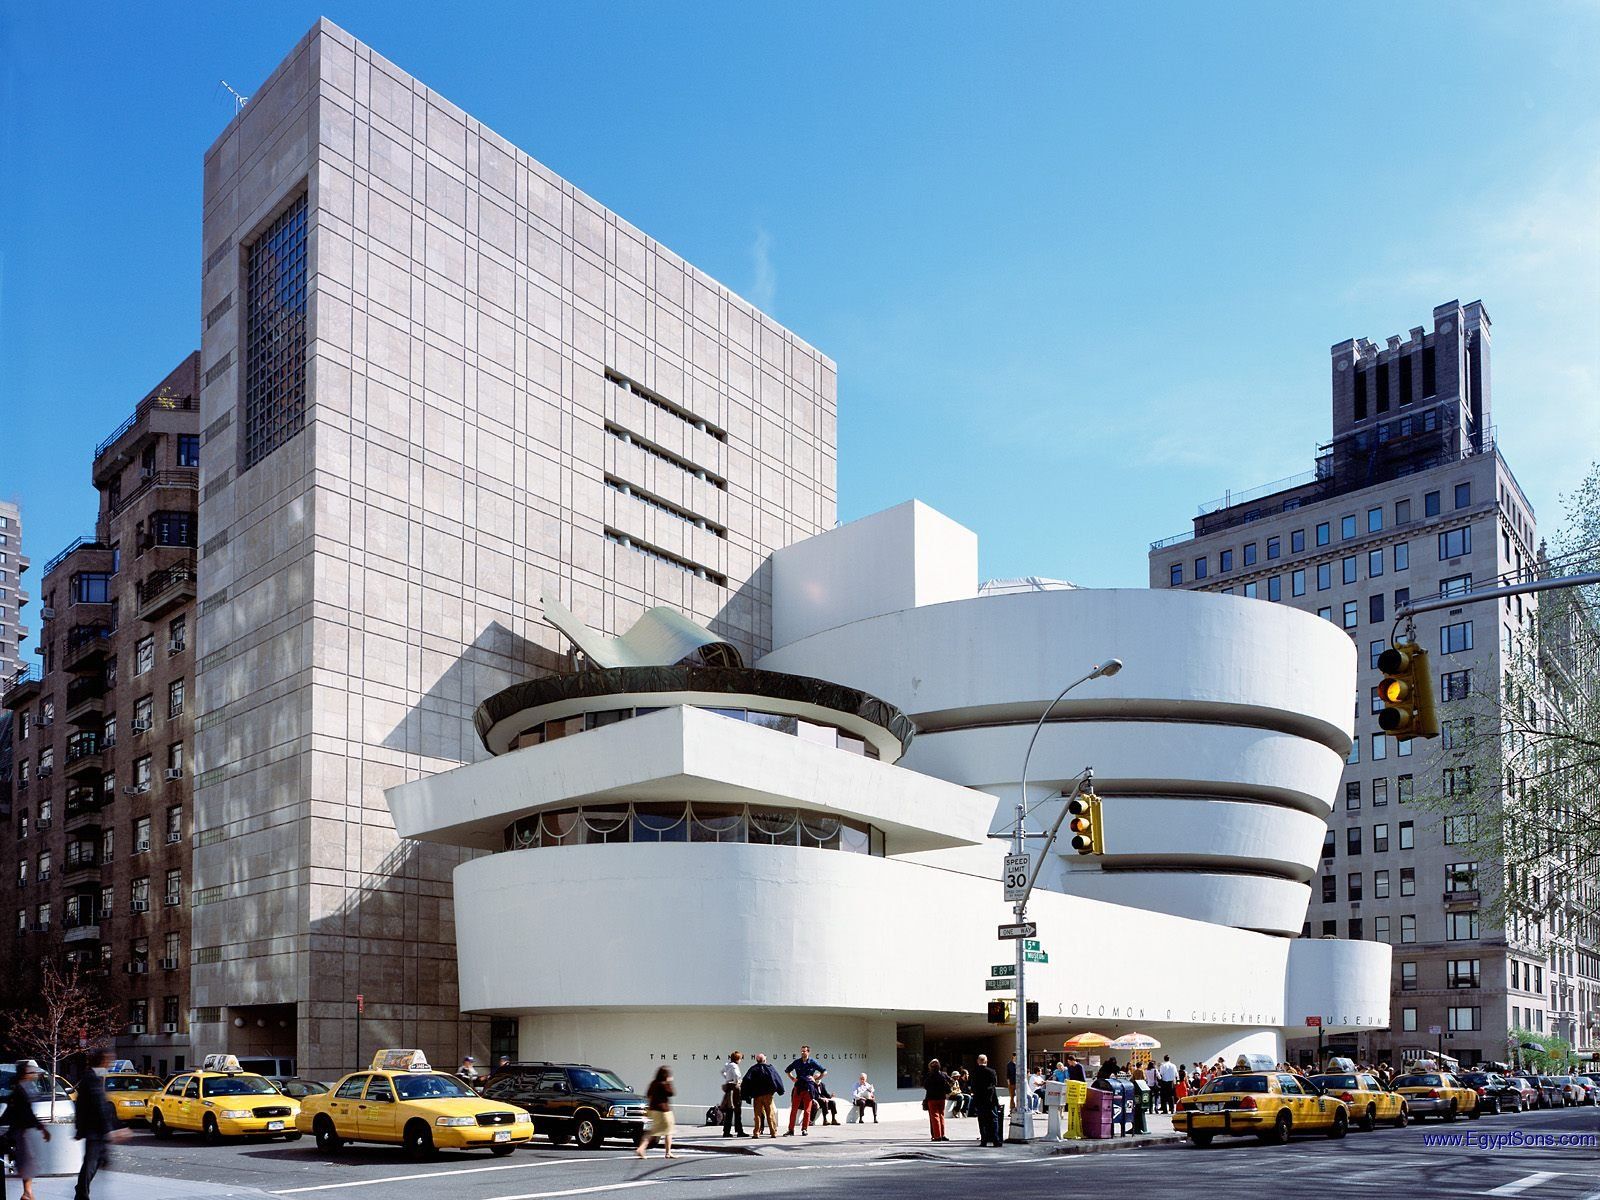 Cosa vedere a New York: i musei gratis